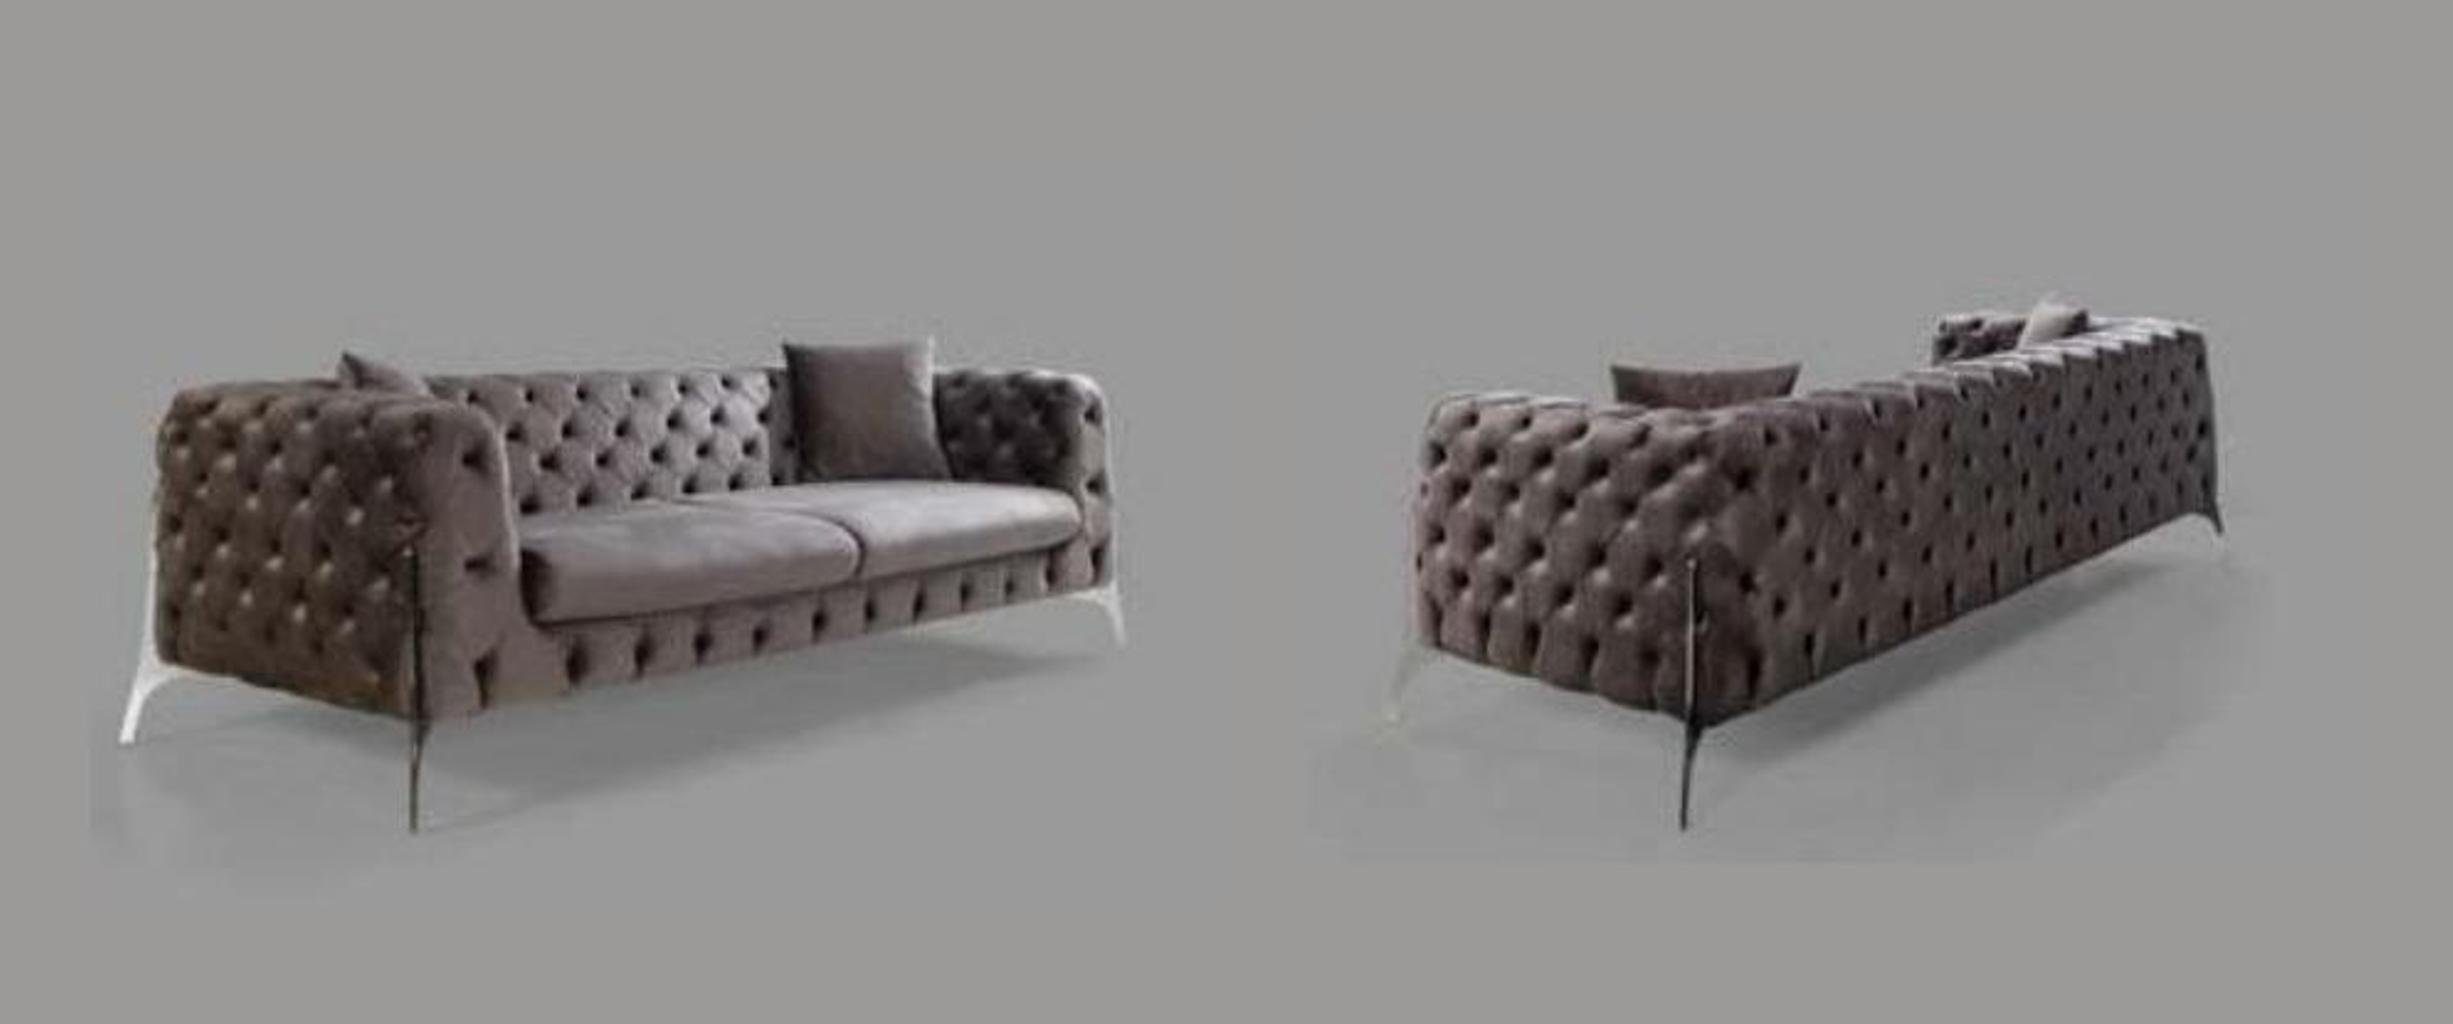 JVmoebel Couch Chesterfield 3-Sitzer Luxus Grauer Dreisitzer Chesterfield-Sofa Made Moderne in Europe Neu,